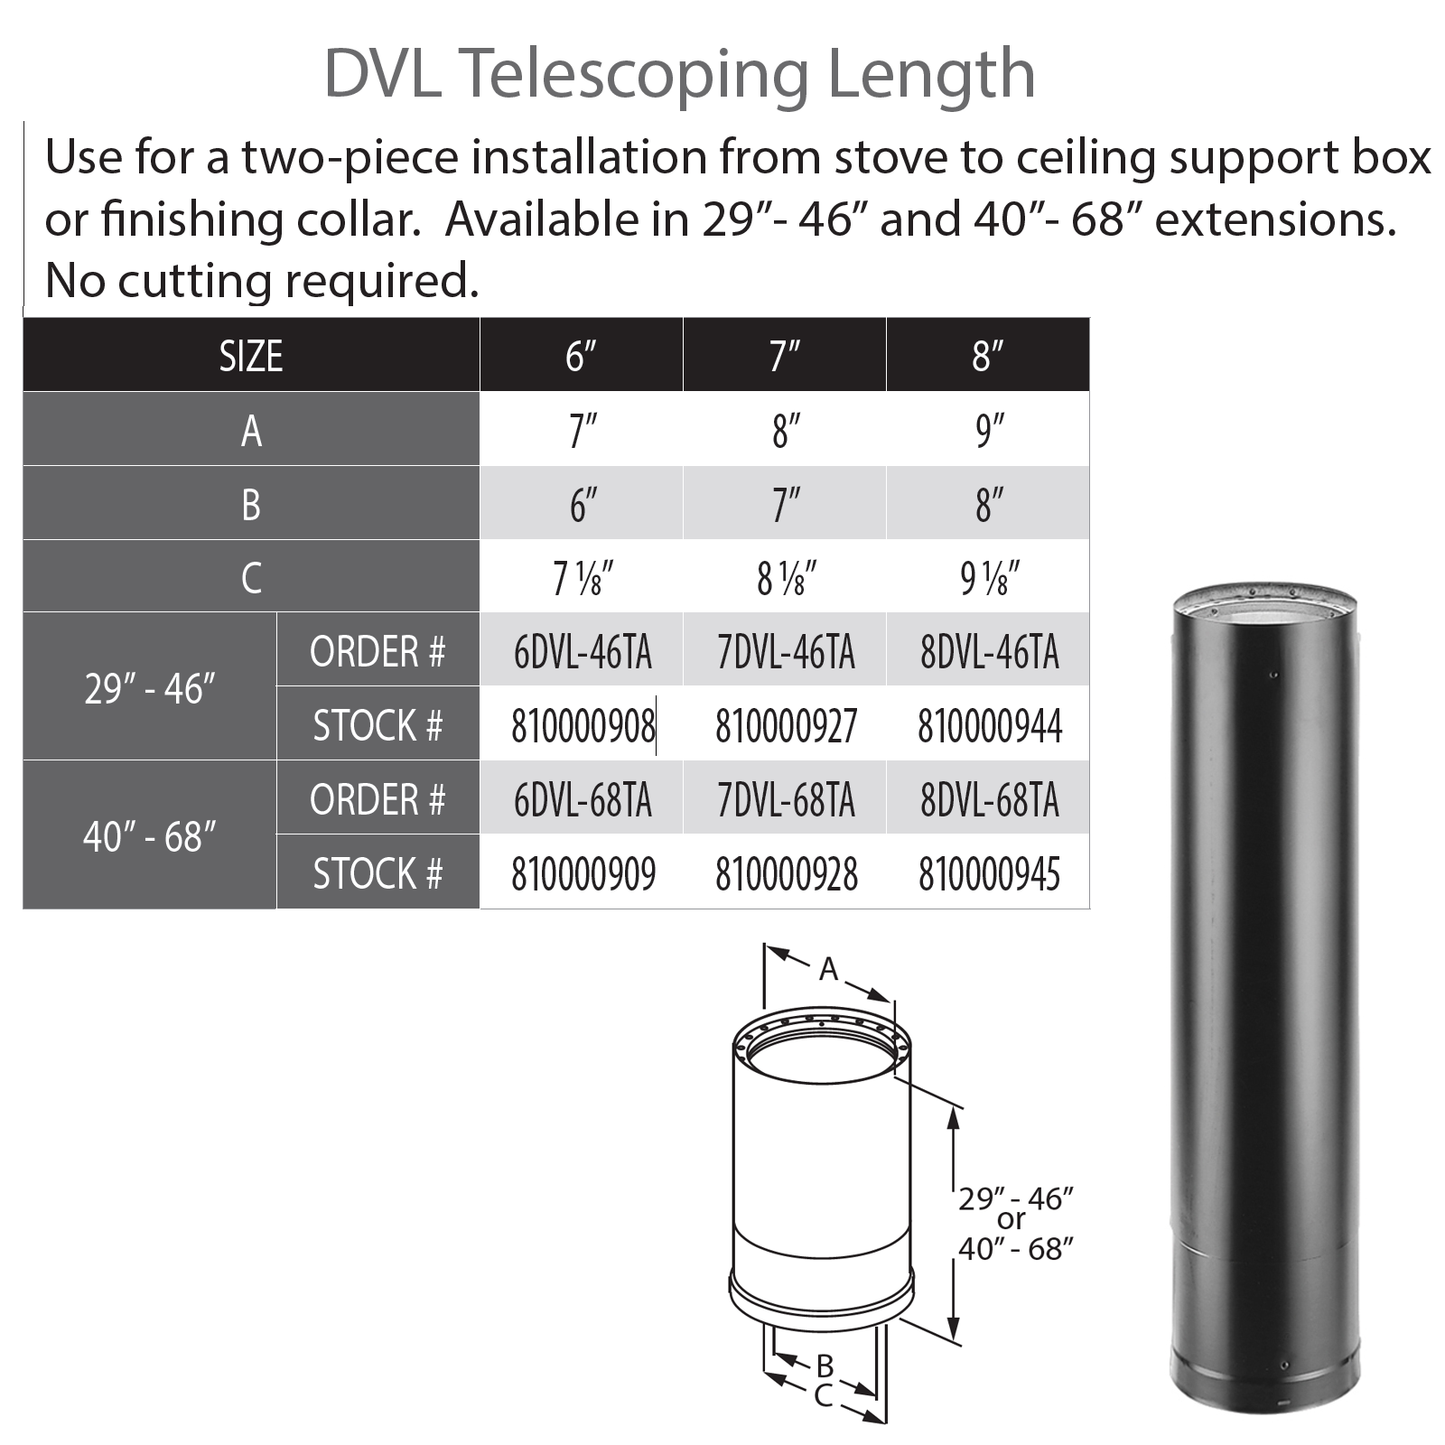 DuraVent DVL 6" Diameter Telescoping Length 40" - 68" | 6DVL-68TA